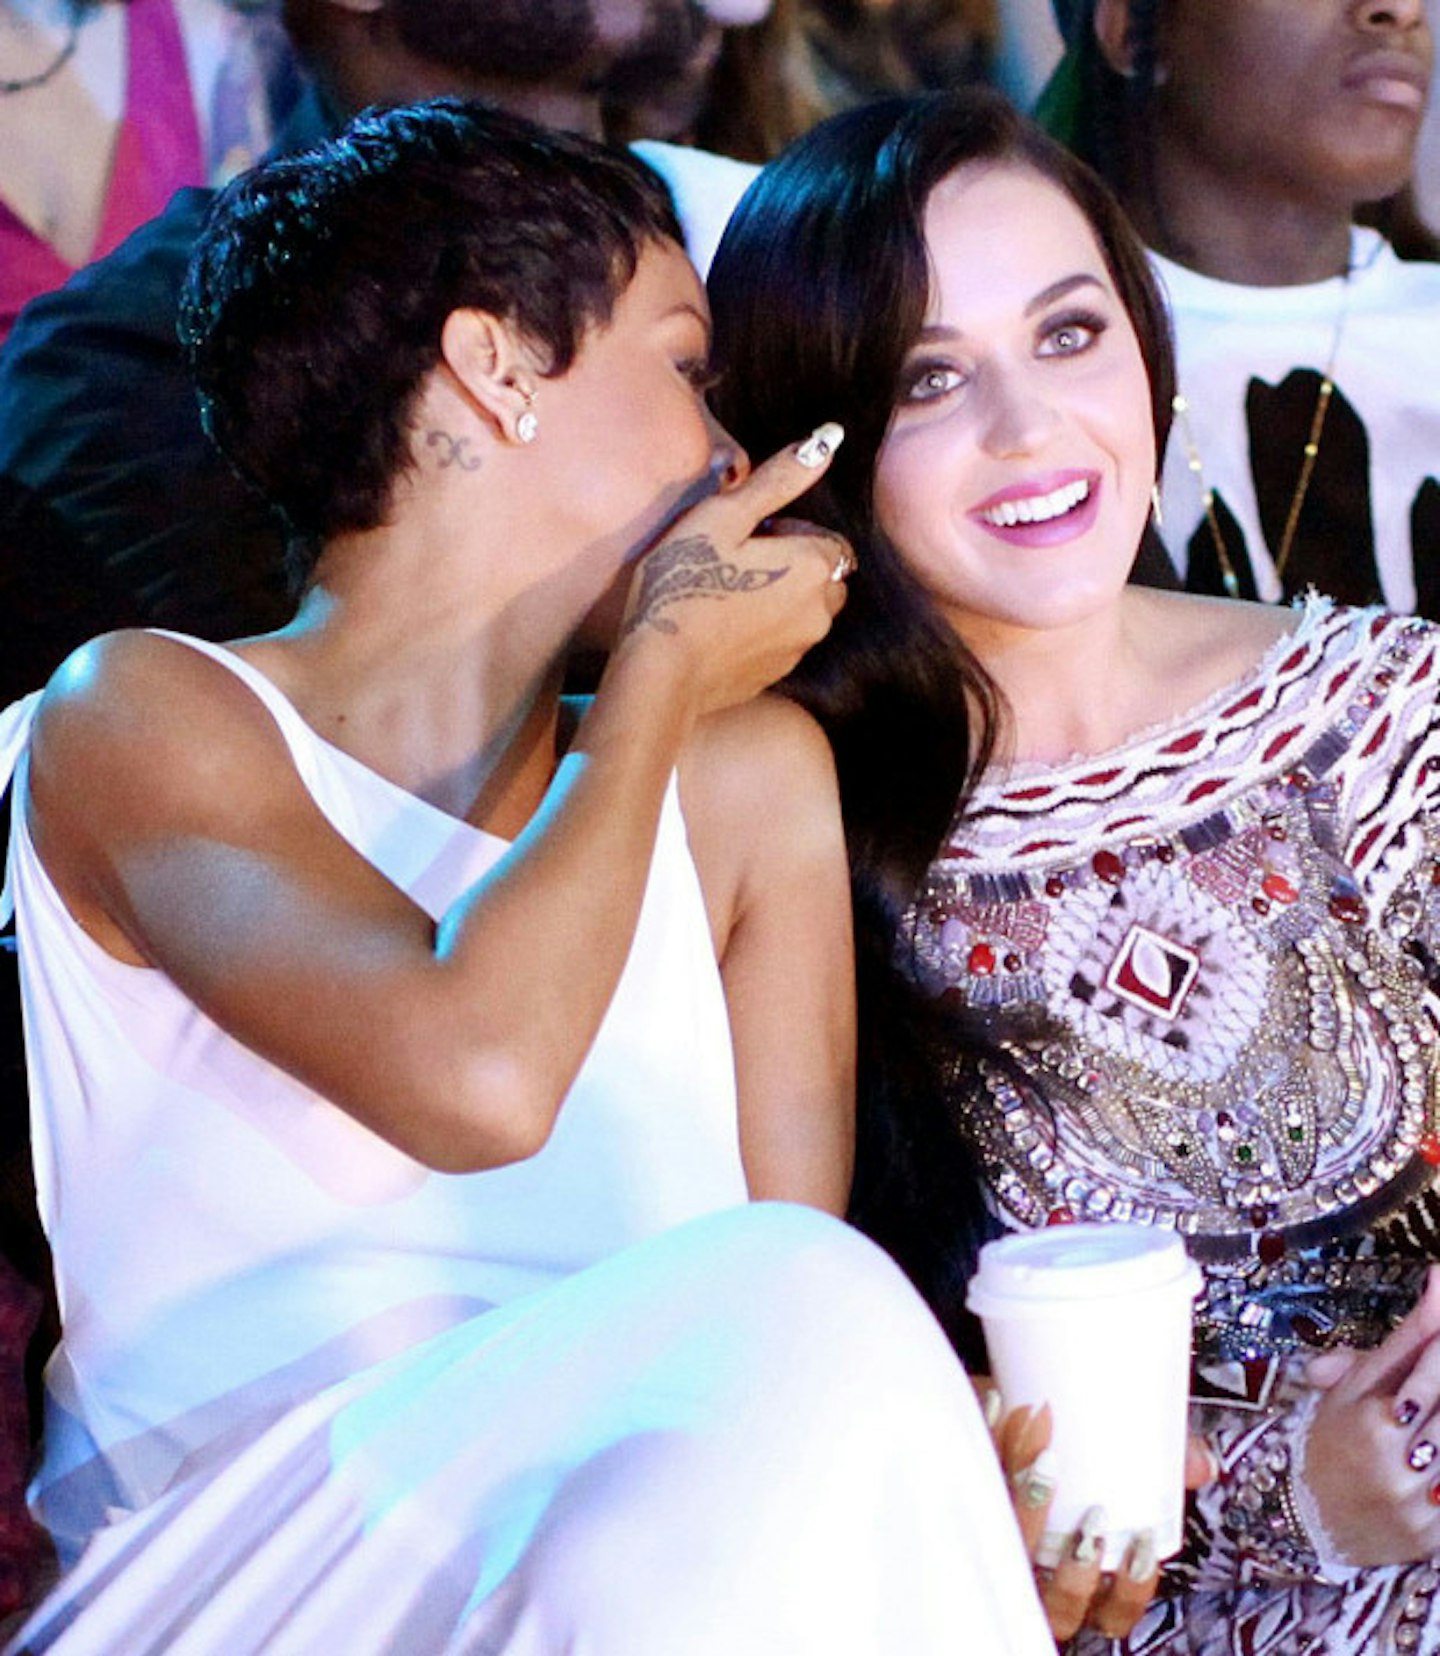 Katy and Rihanna